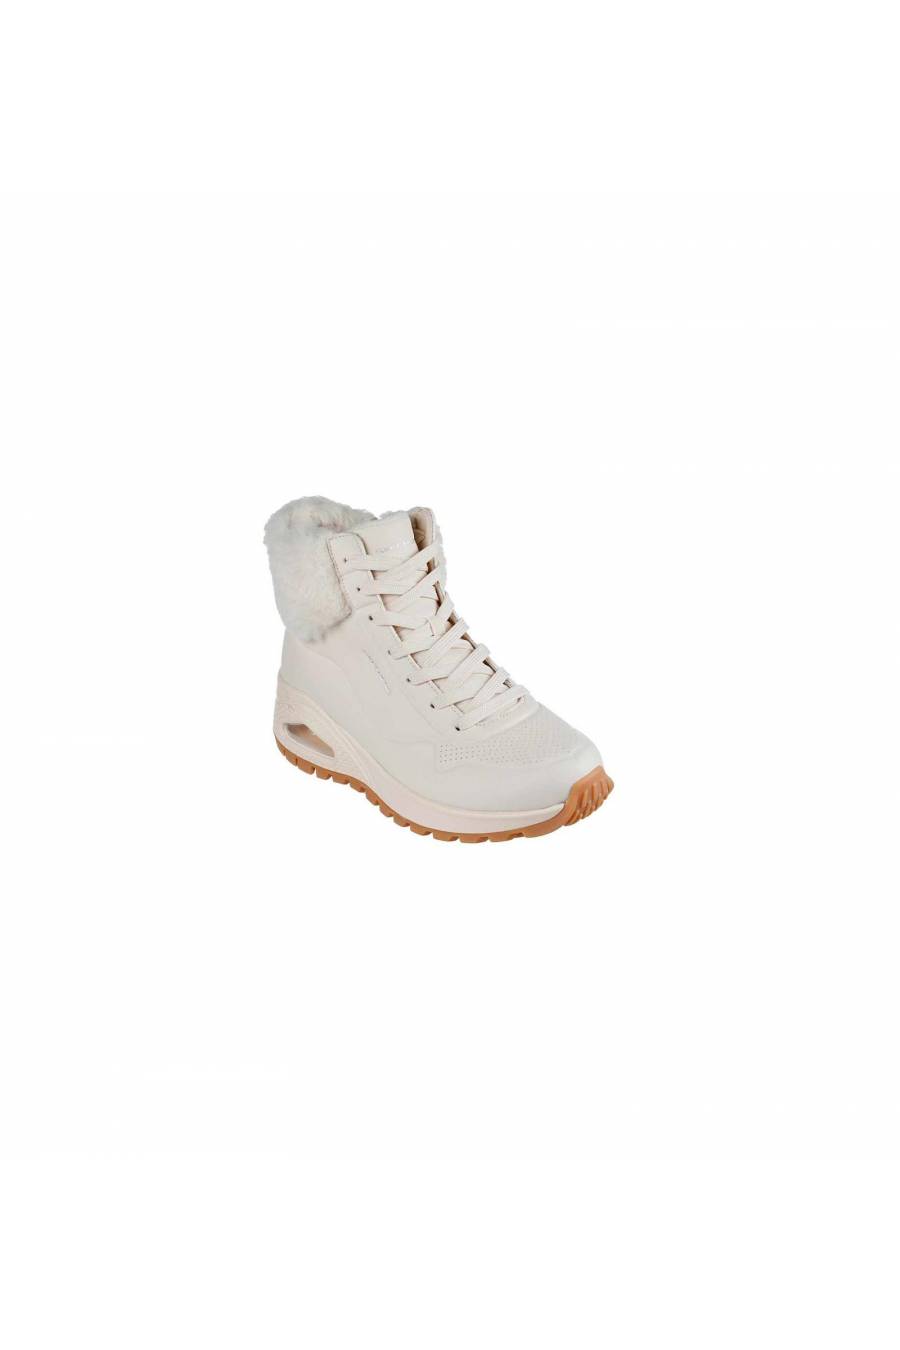 Zapatillas Skechers Uno Rugged - Fall Air para mujer 167274-NAT - msdsport